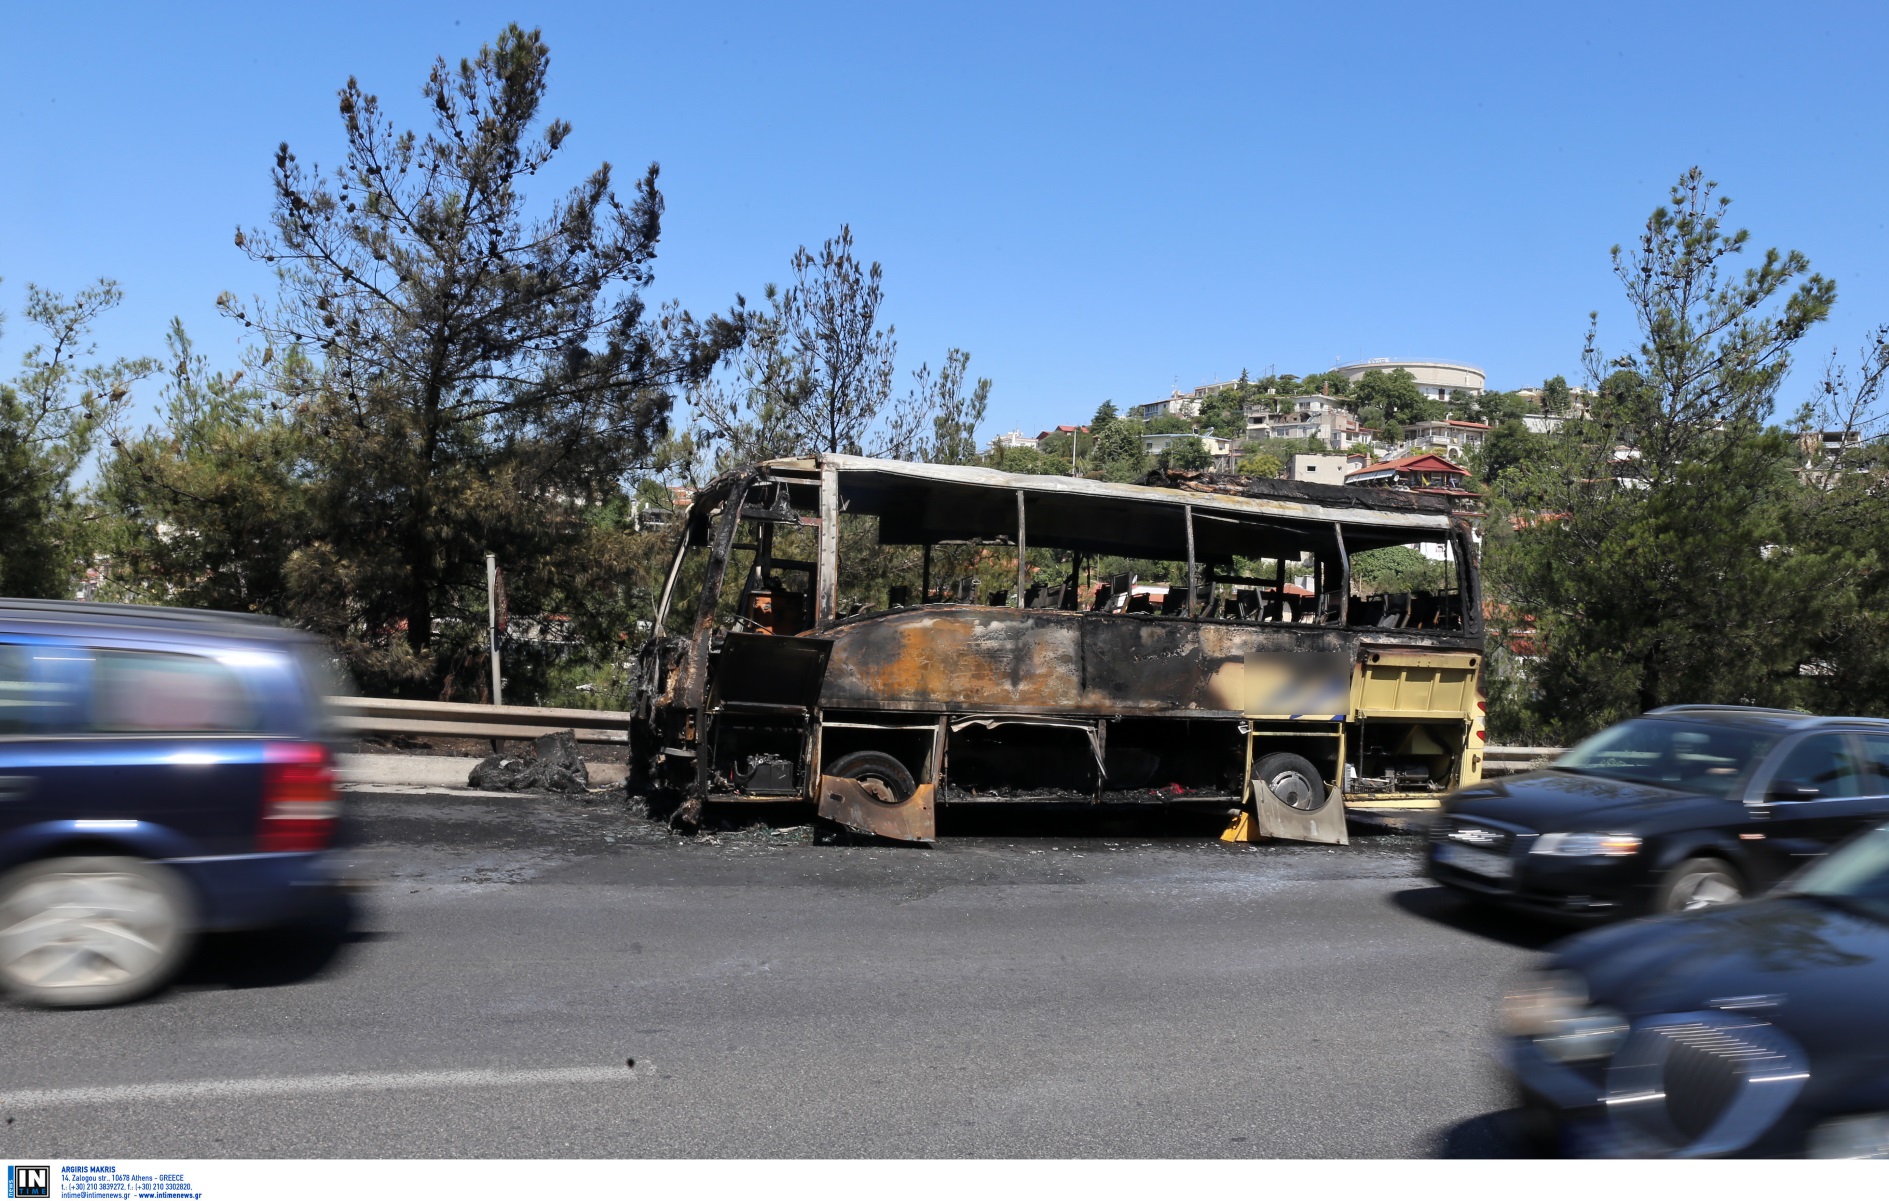 Μετέωρα: Φωτιά άρπαξε τουριστικό λεωφορείο έξω από μοναστήρι – Κάηκε ολοσχερώς